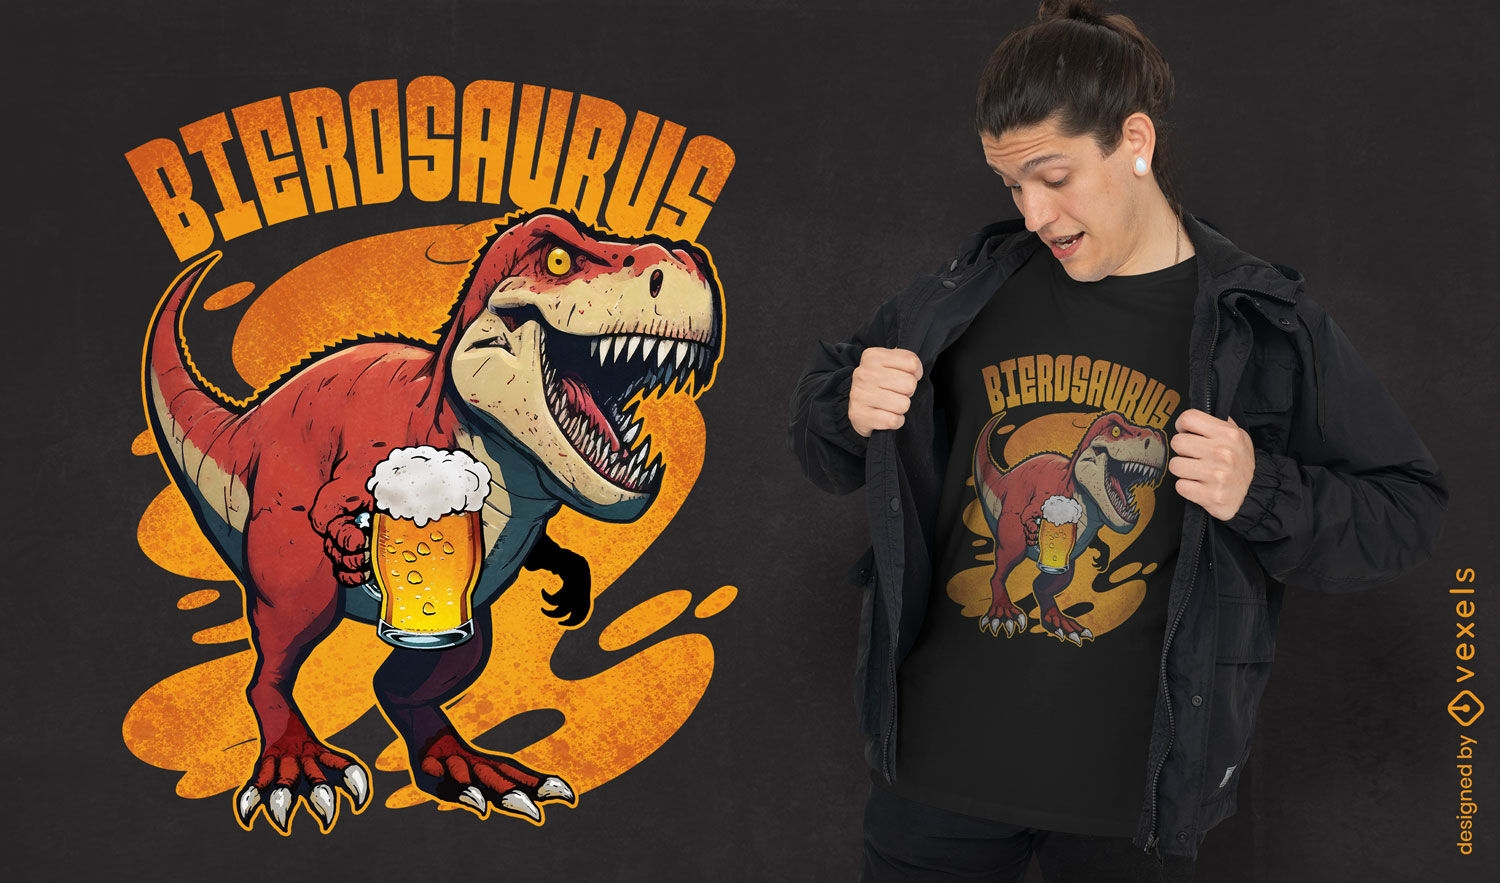 Beer-drinking dinosaur t-shirt design